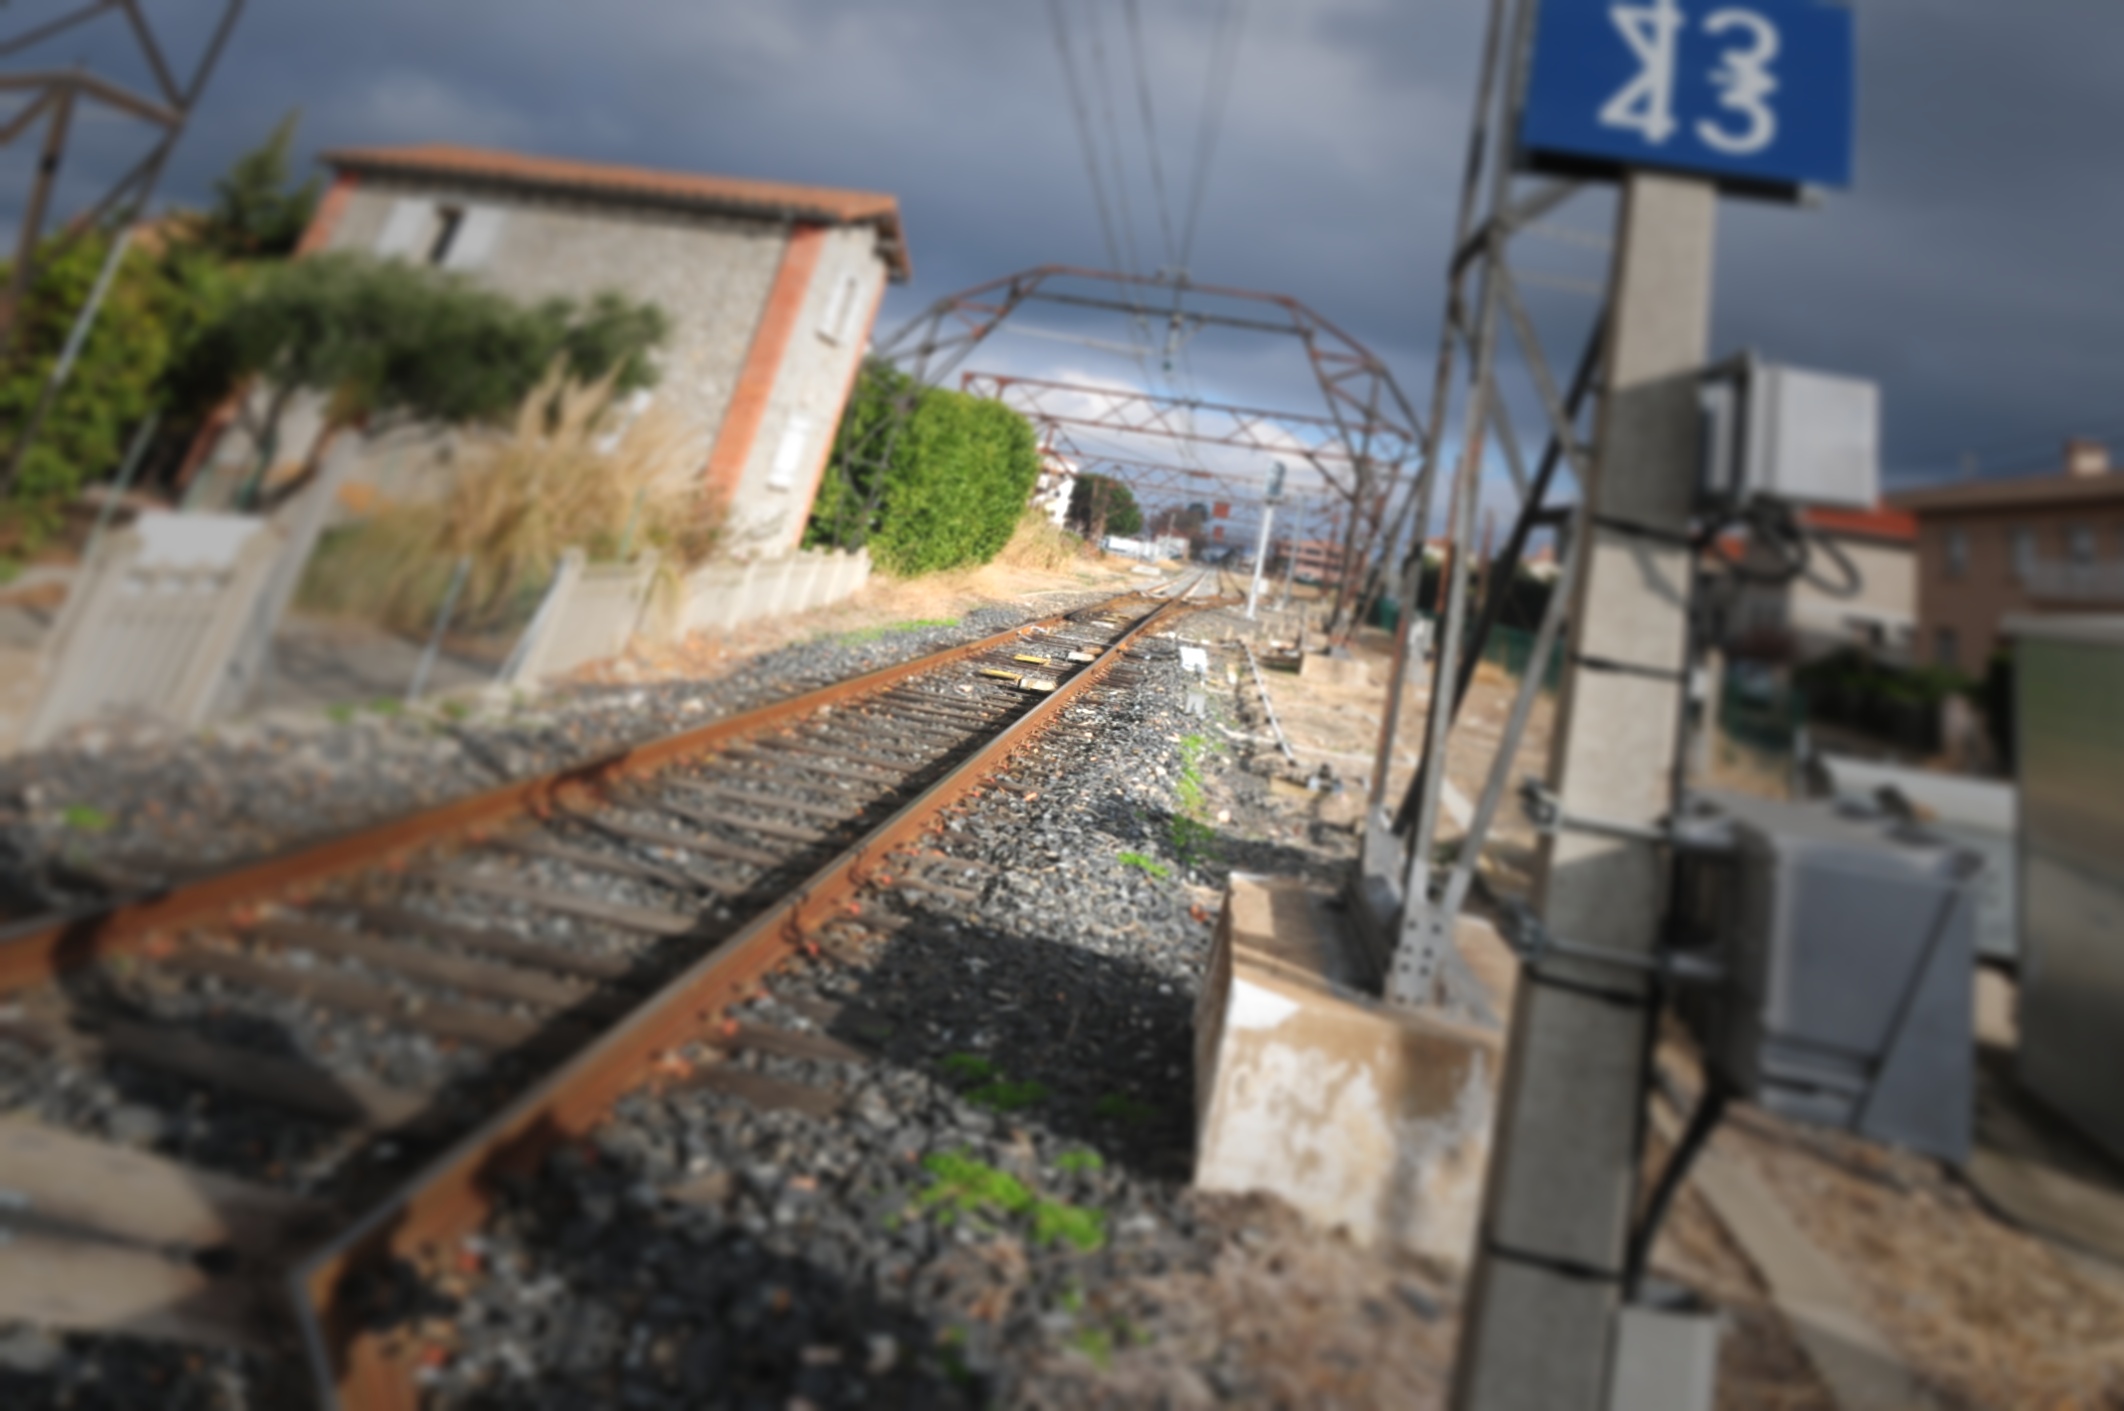 Wie durch einen verträumten Filter geschautes Bild einer Eisenbahnstrecke, in der Horizontalen um etwa 15 Grad gekippt, was den Betrunken-Blickwinkel noch verstärkt.